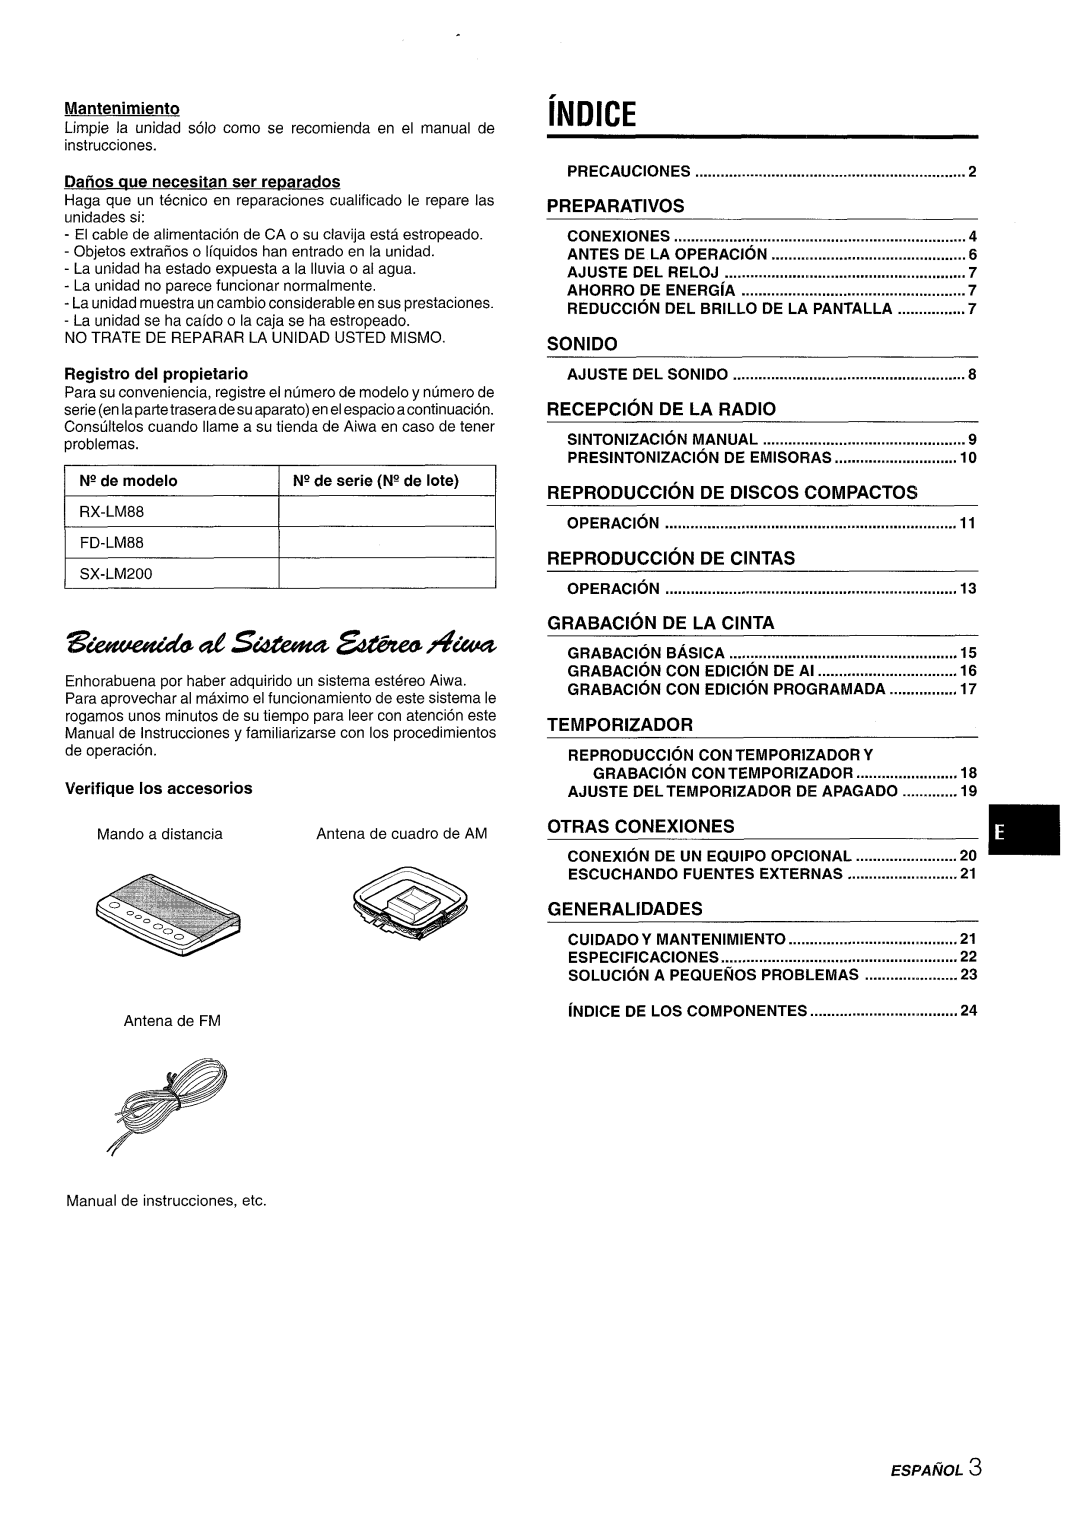 Aiwa XR-M88 manual Indice, Registro del propietario, Preparatives, Sonido, Recepcion, De La Radio, Reproduction, De Discos 